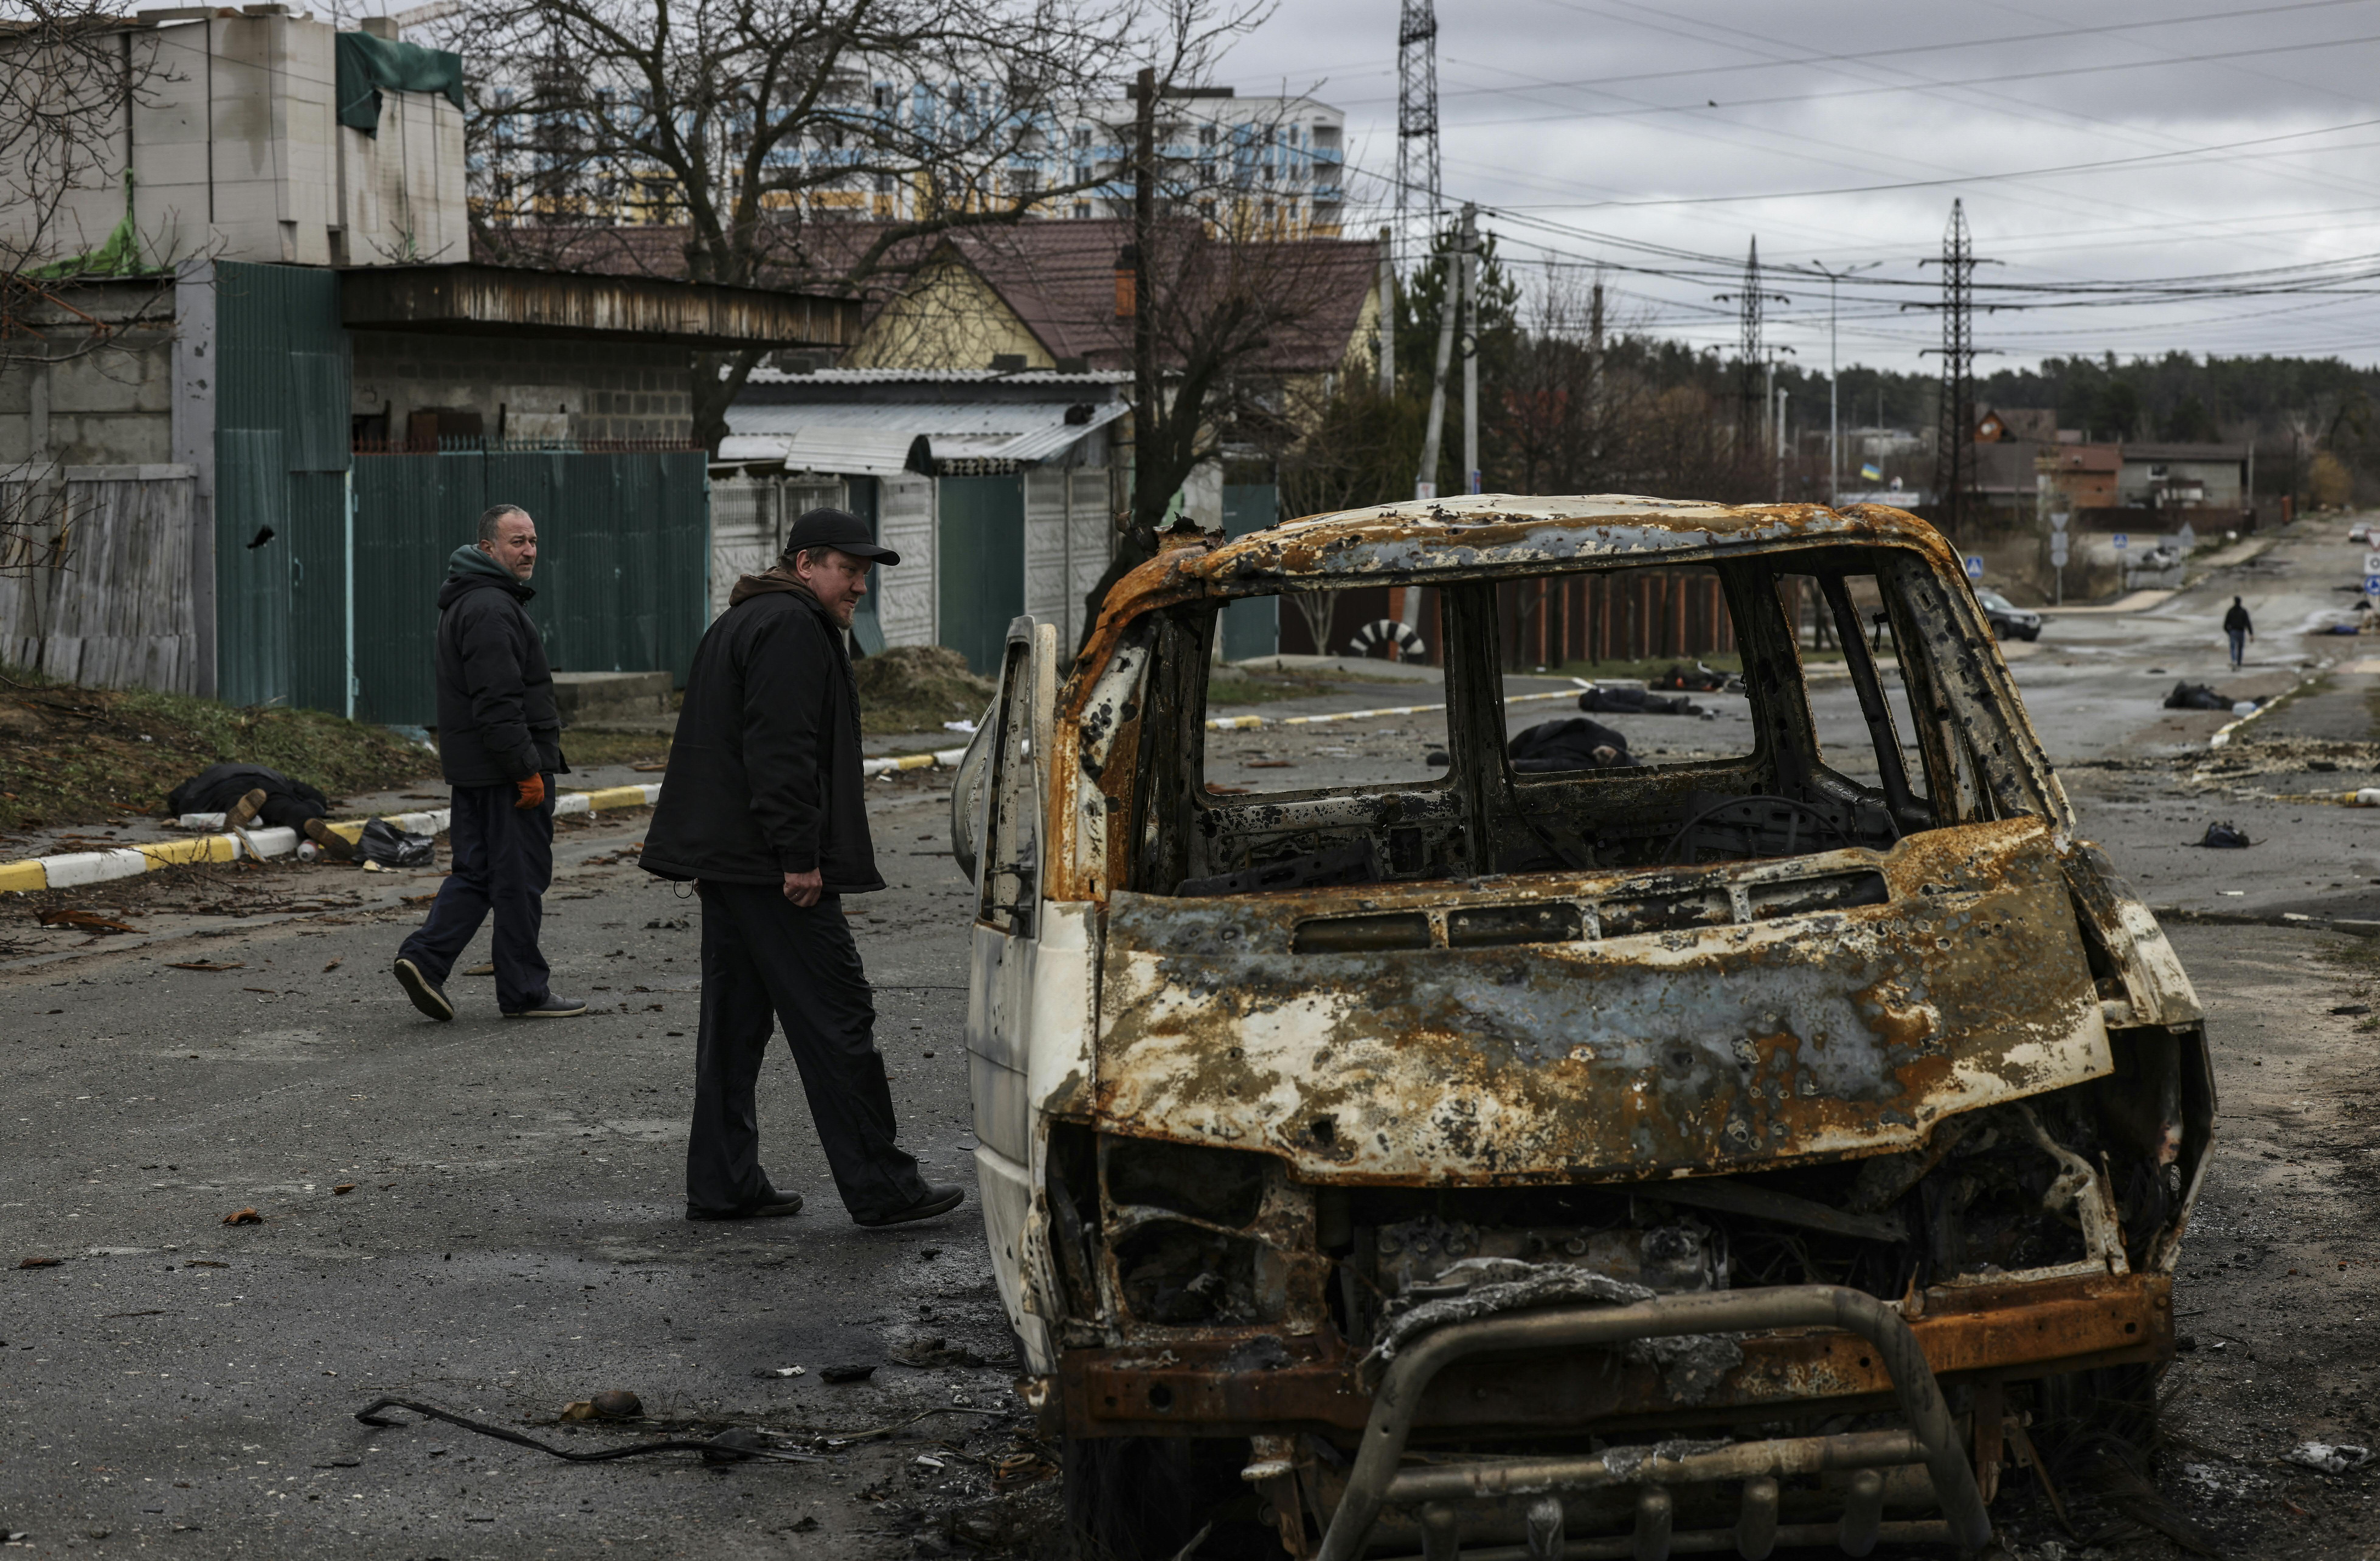 Unas 300 personas enterradas “en fosas comunes” en ciudad ucraniana de Bucha